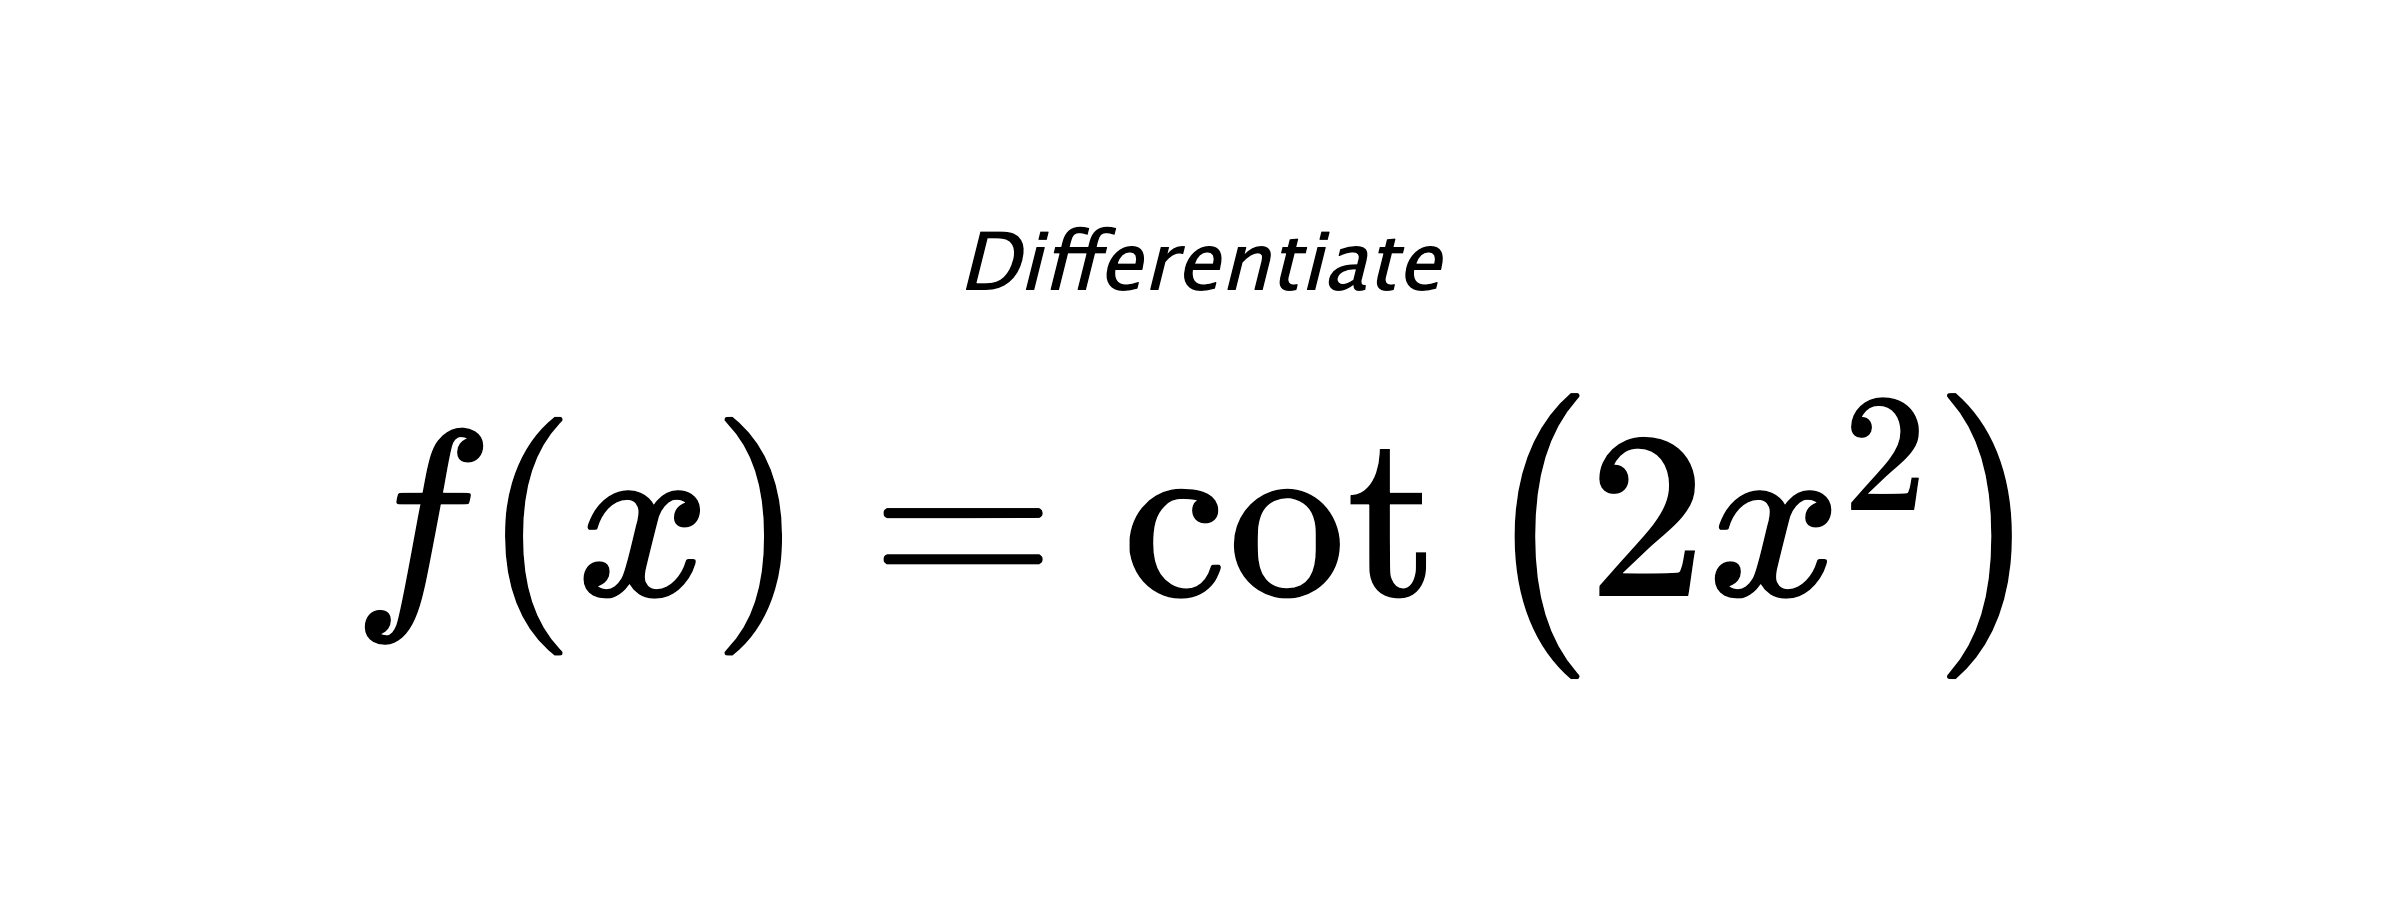 Differentiate $ f(x) = \cot{\left(2 x^{2} \right)} $